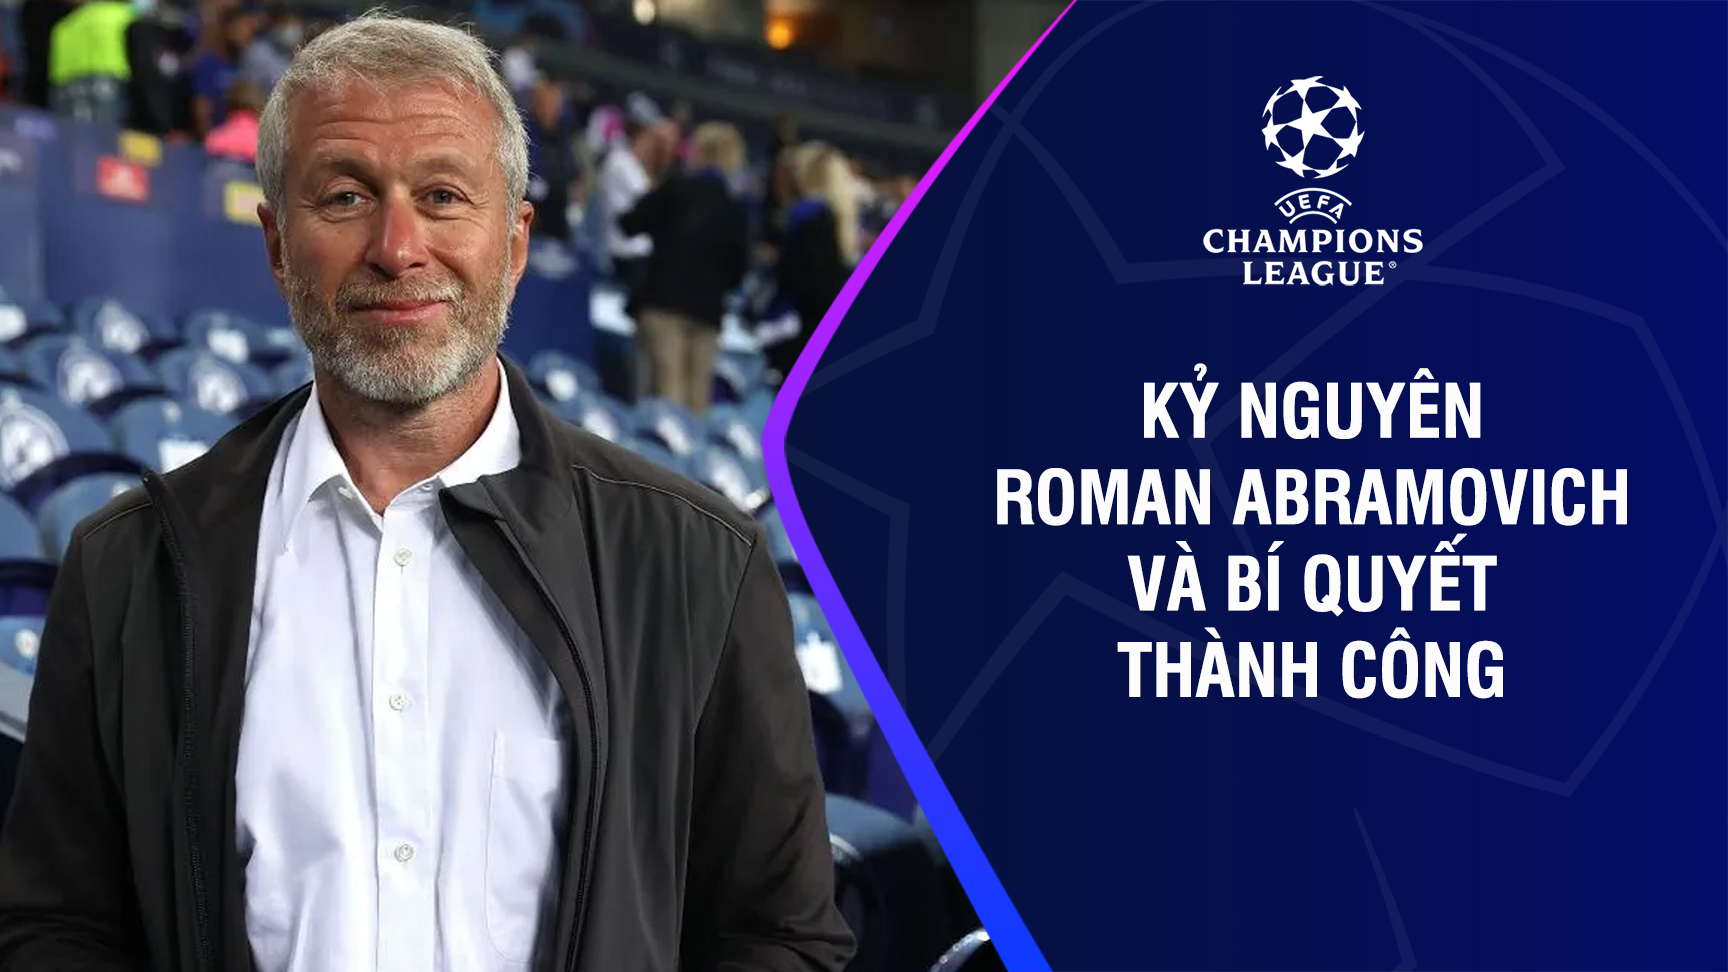 Kỷ nguyên Roman Abramovich và bí quyết thành công - UEFA Champions League